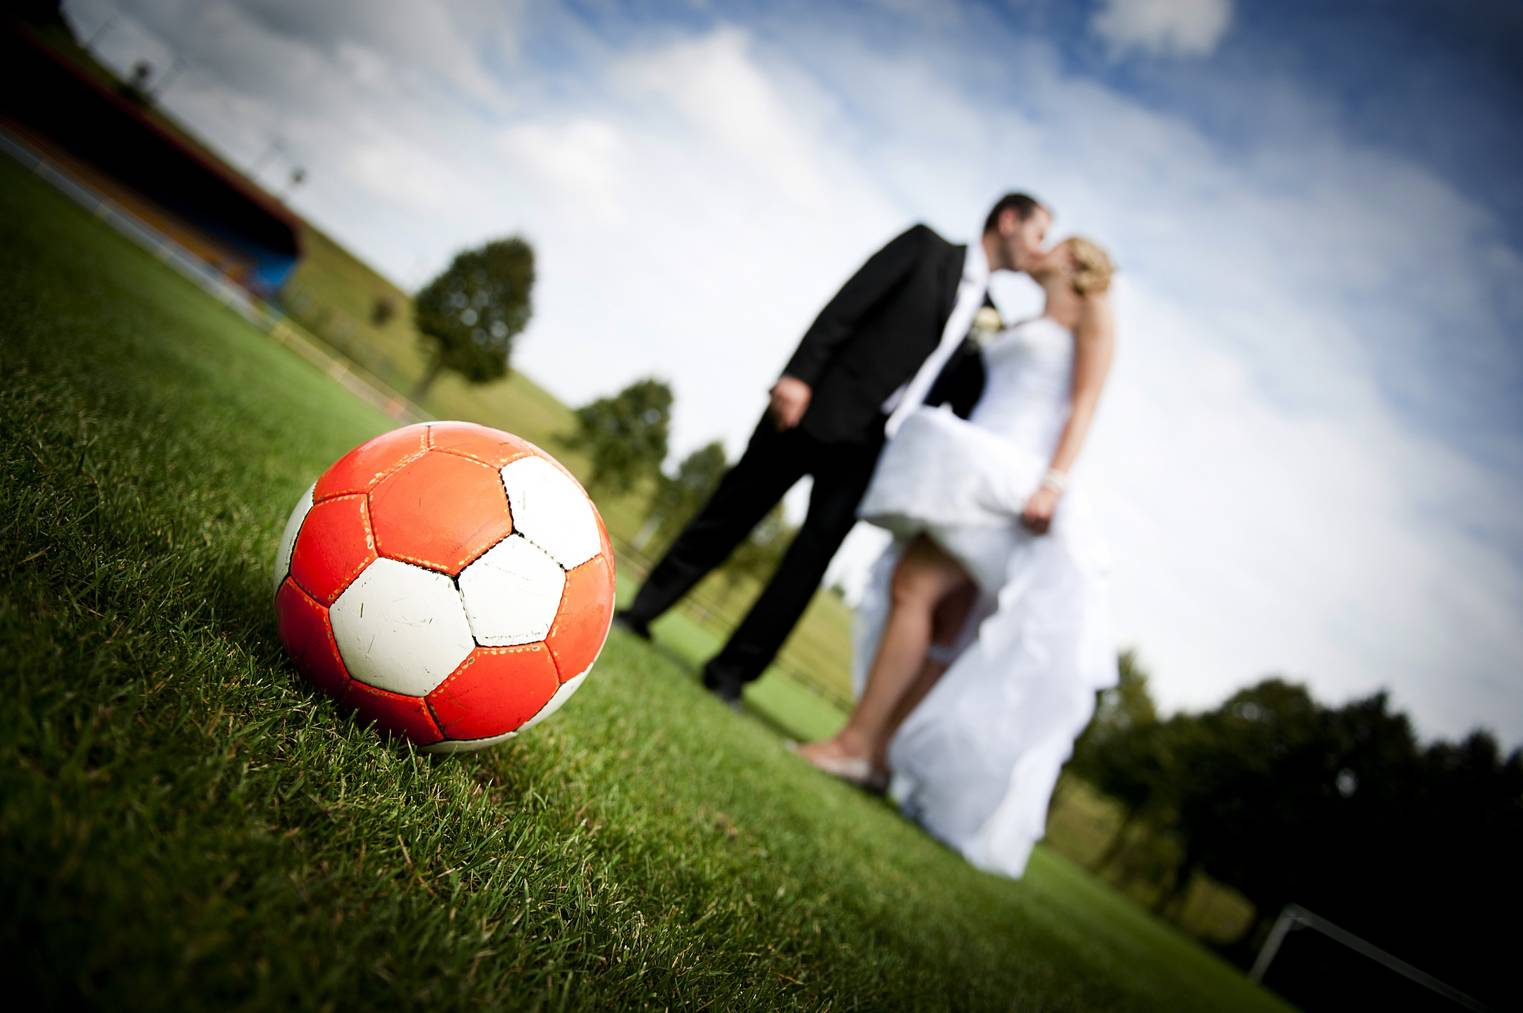 Einer der drei möglichen Wege, in die Nationalmannschaft von Andorra zu kommen: Heirat. (Bild: iStock / Halfpoint)